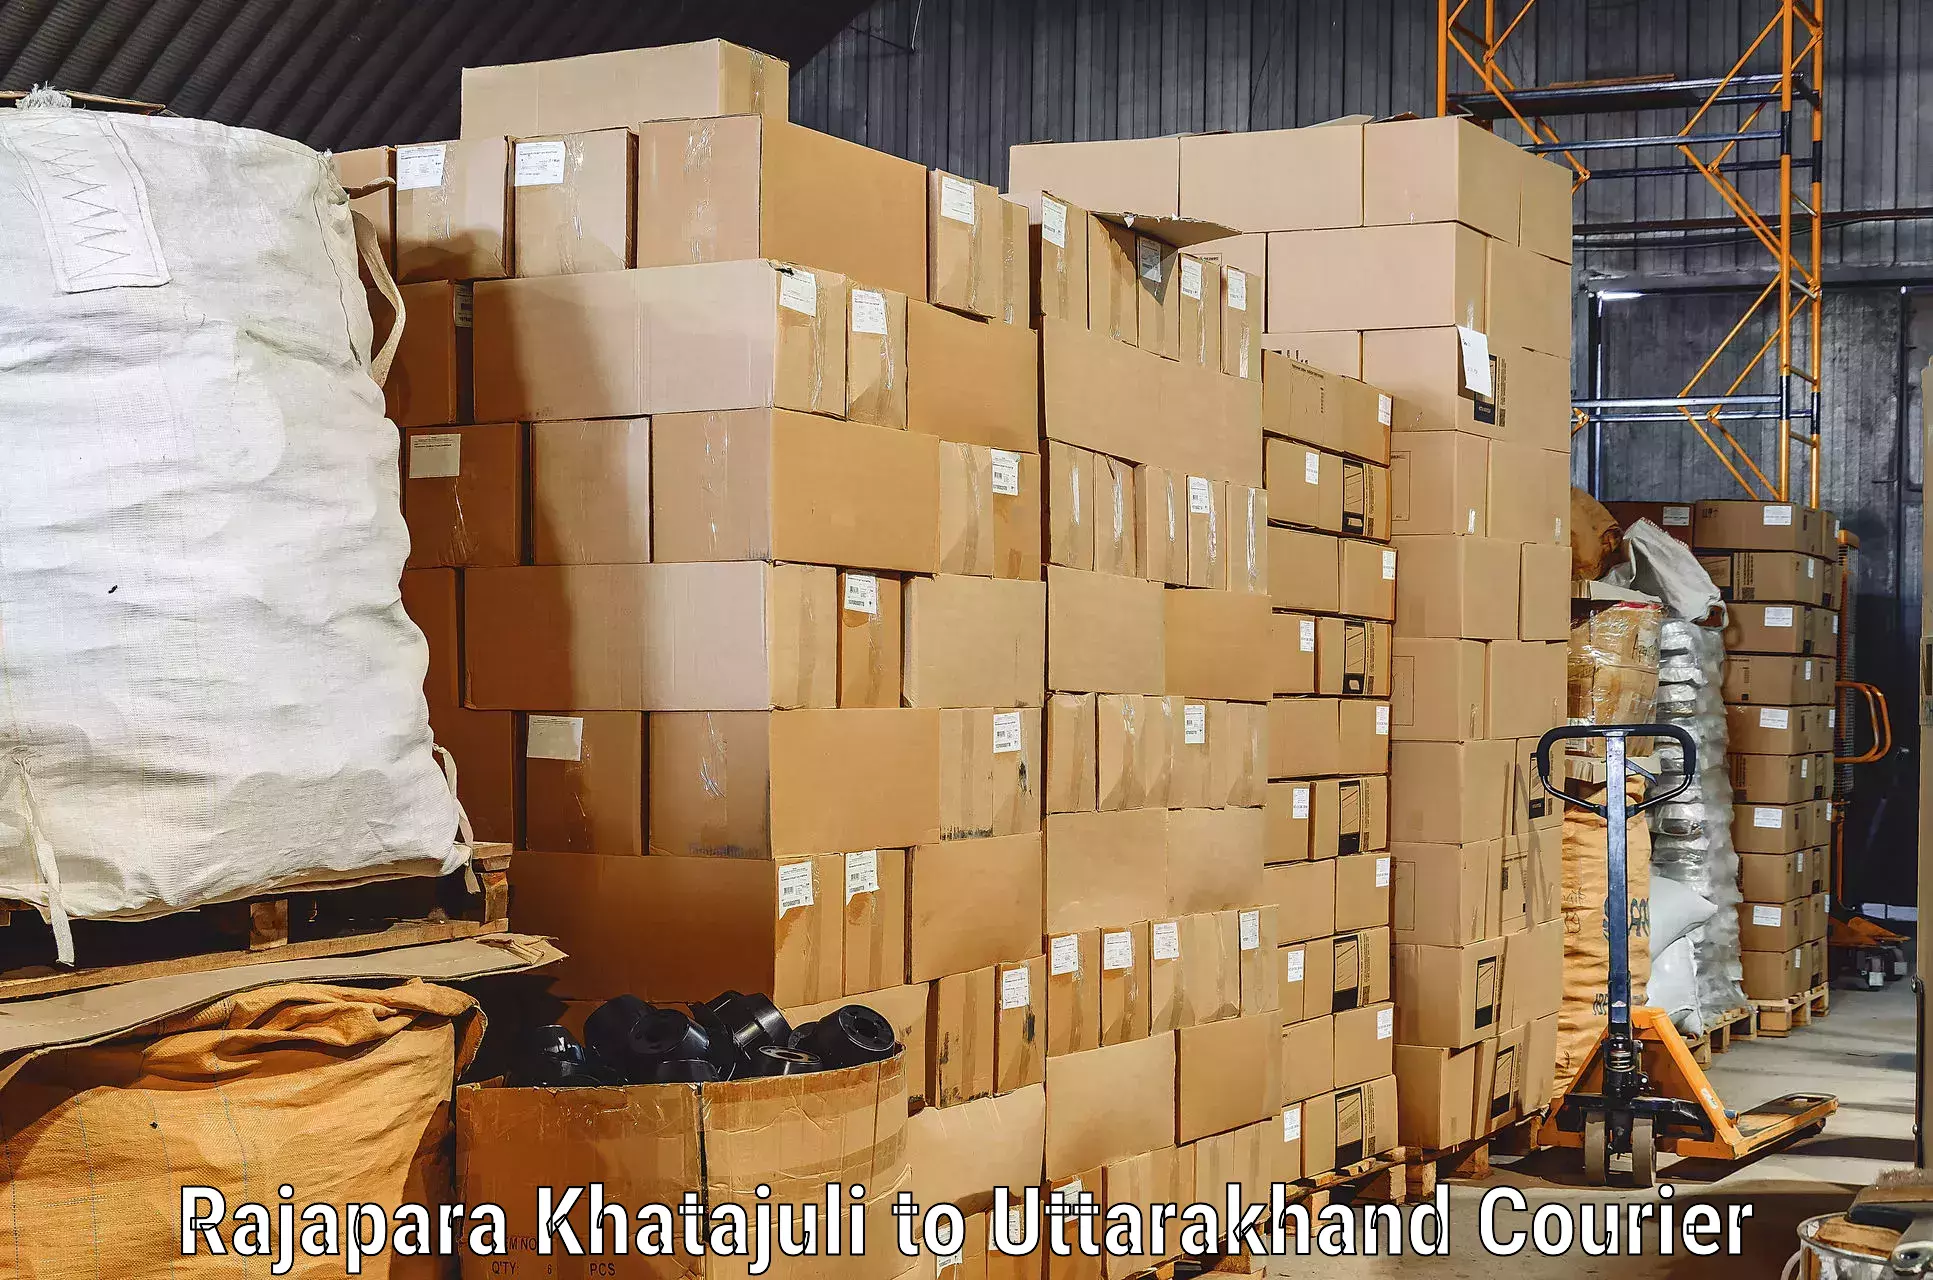 Full-service furniture transport in Rajapara Khatajuli to IIT Roorkee